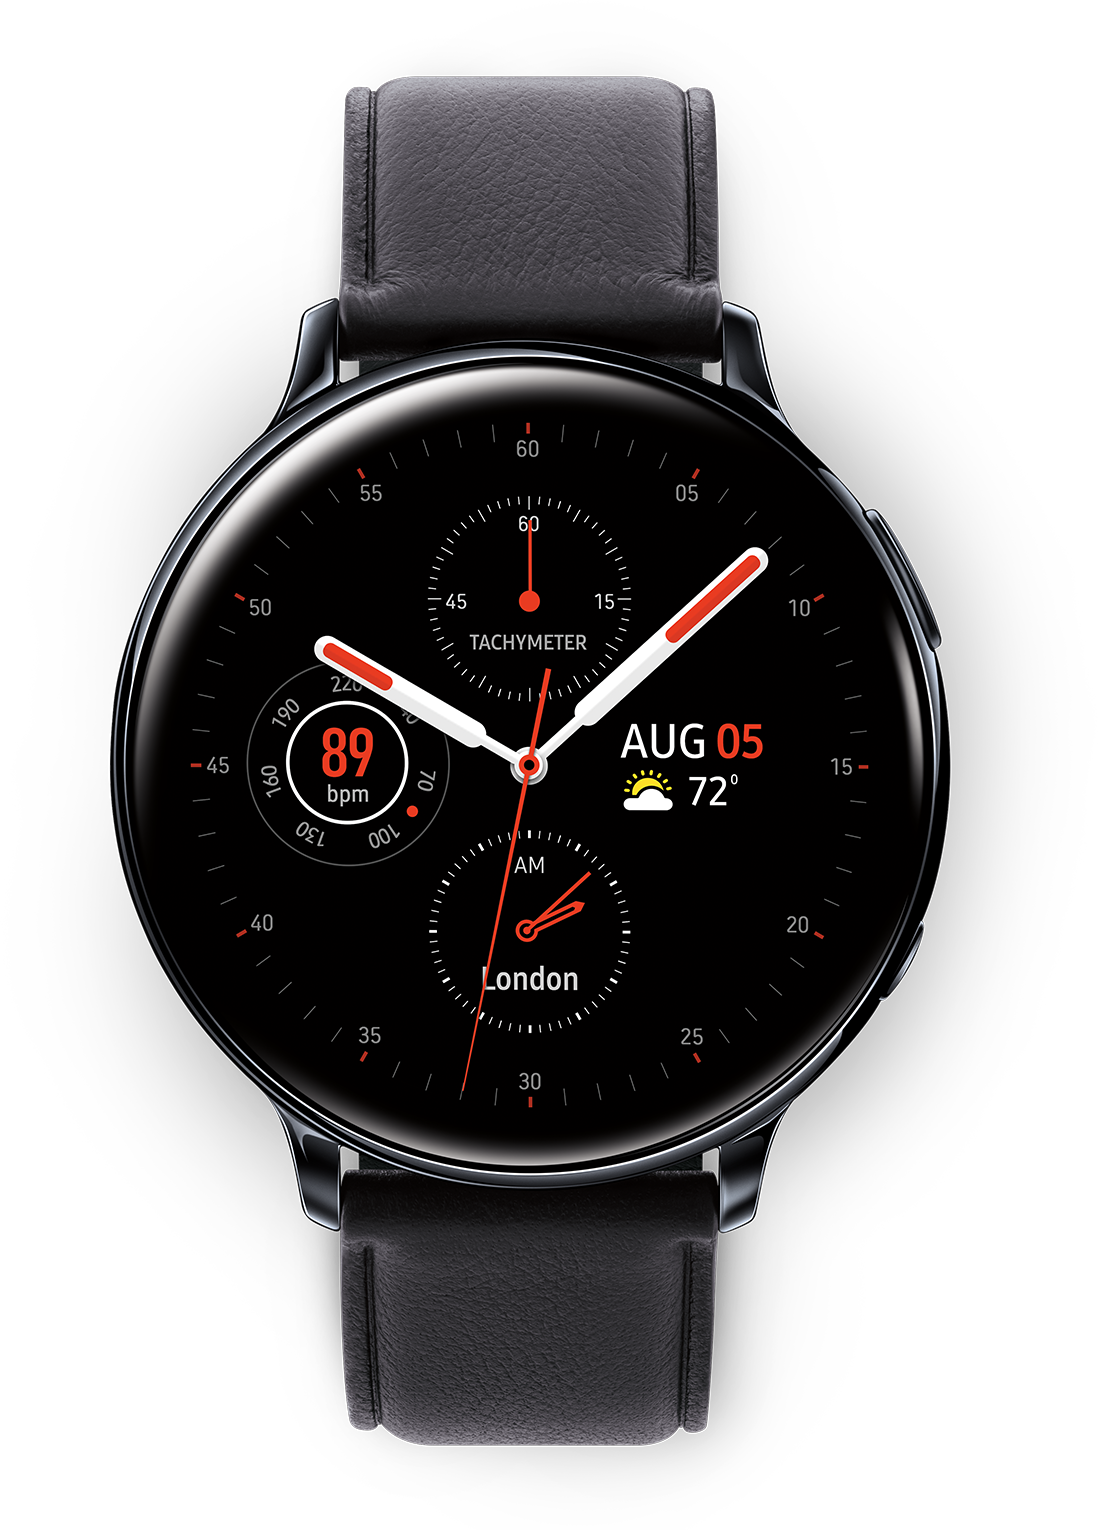 Samsung Galaxy Watch Active2 LTE